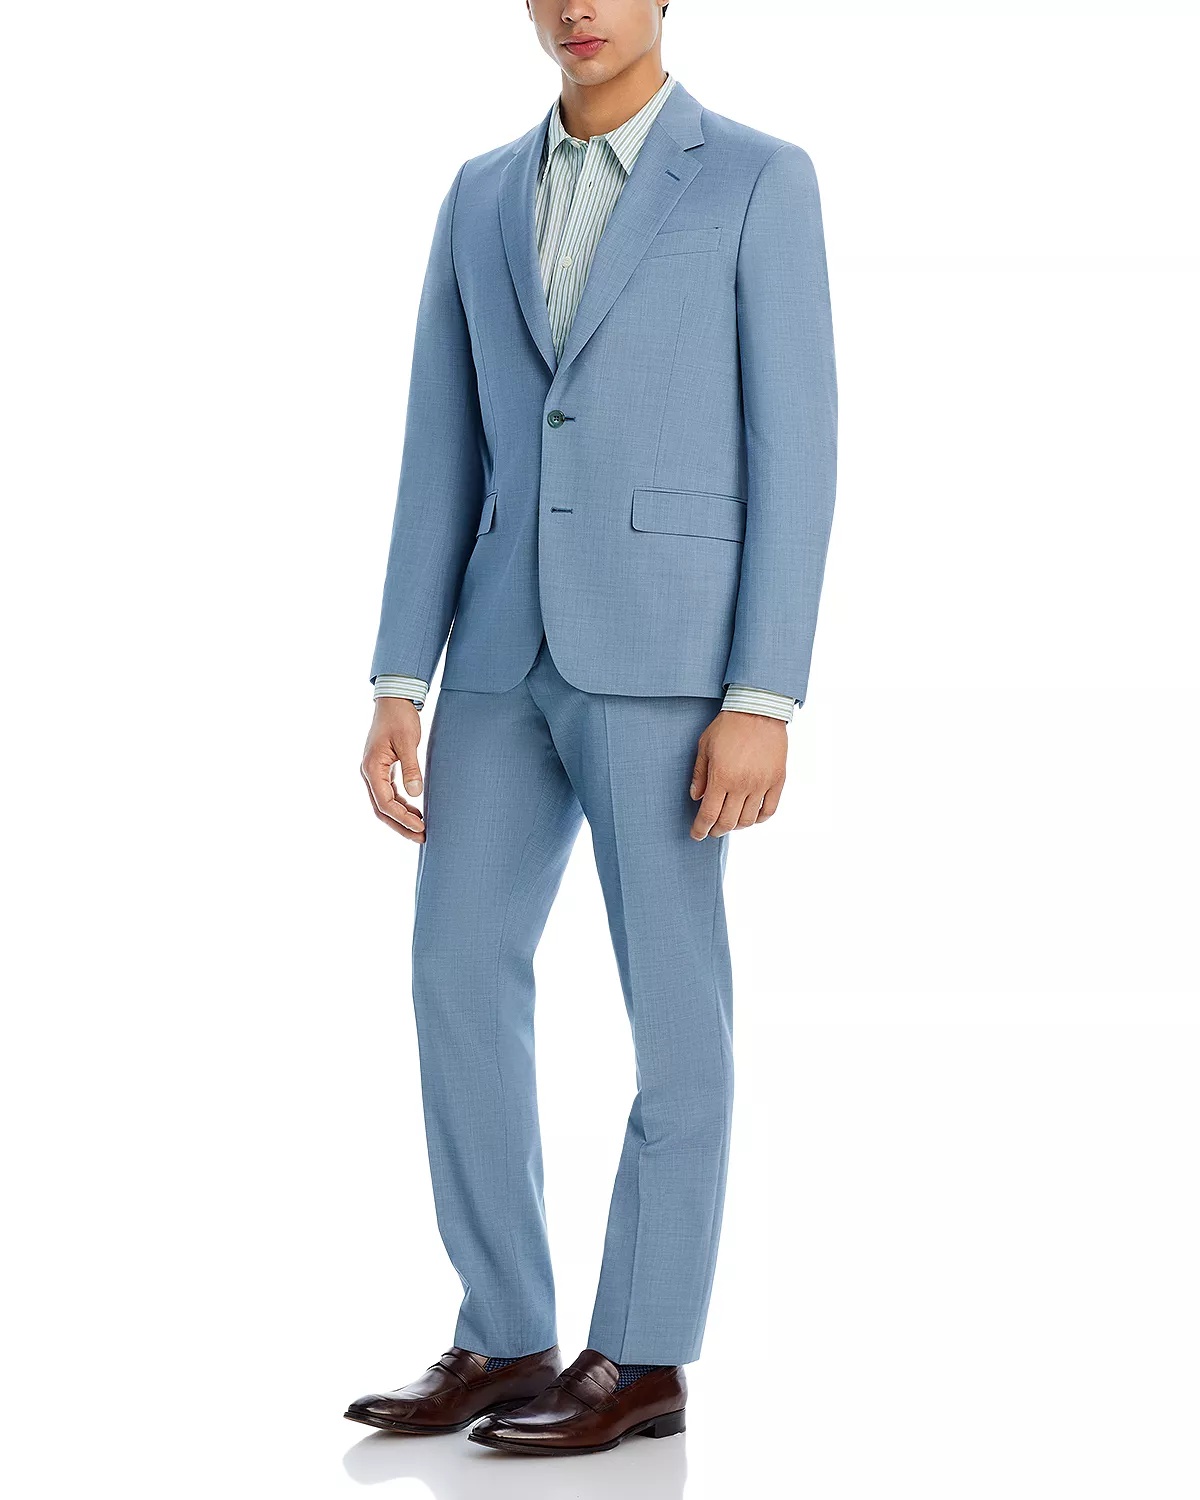 Soho Melange Solid Extra Slim Fit Suit - 2